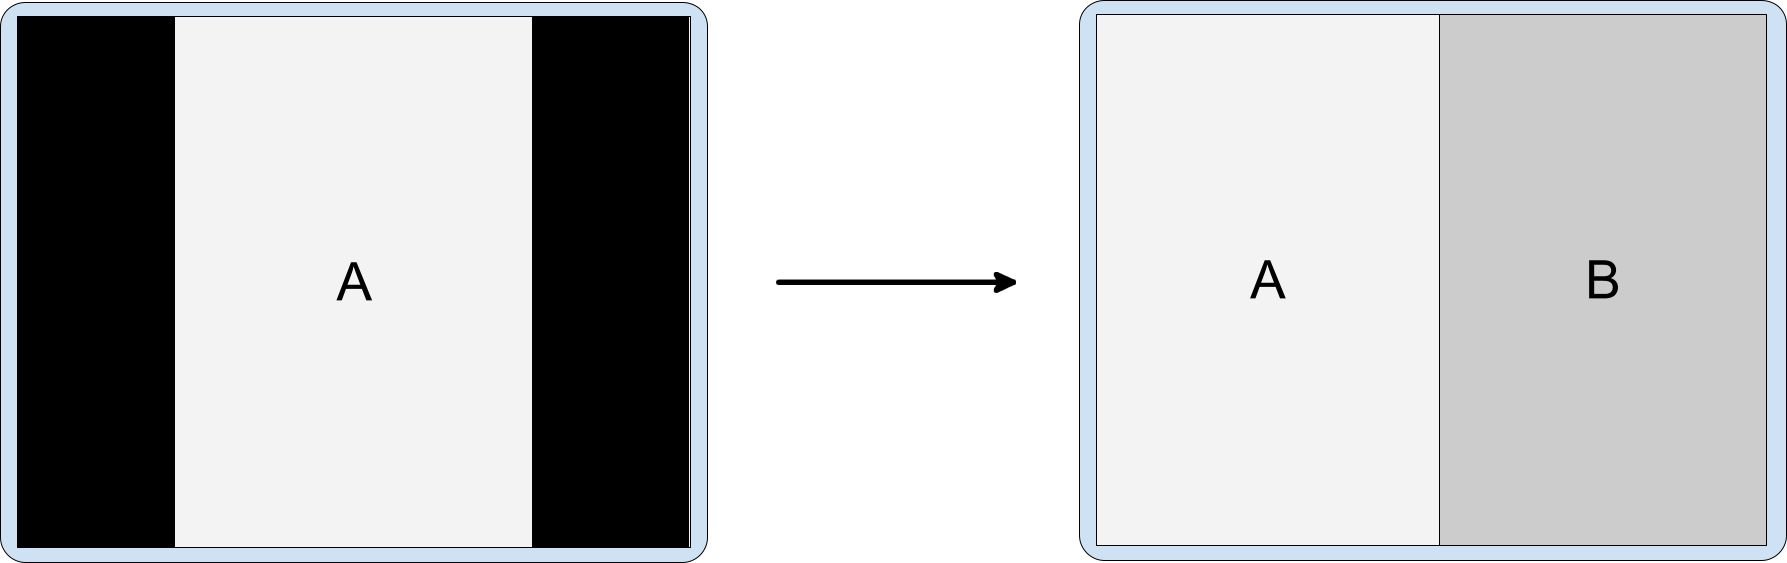 Incorporación de actividades con app solo en orientación vertical en pantalla horizontal. La actividad en formato letterbox y solo en orientación vertical A inicia la actividad B incorporada.